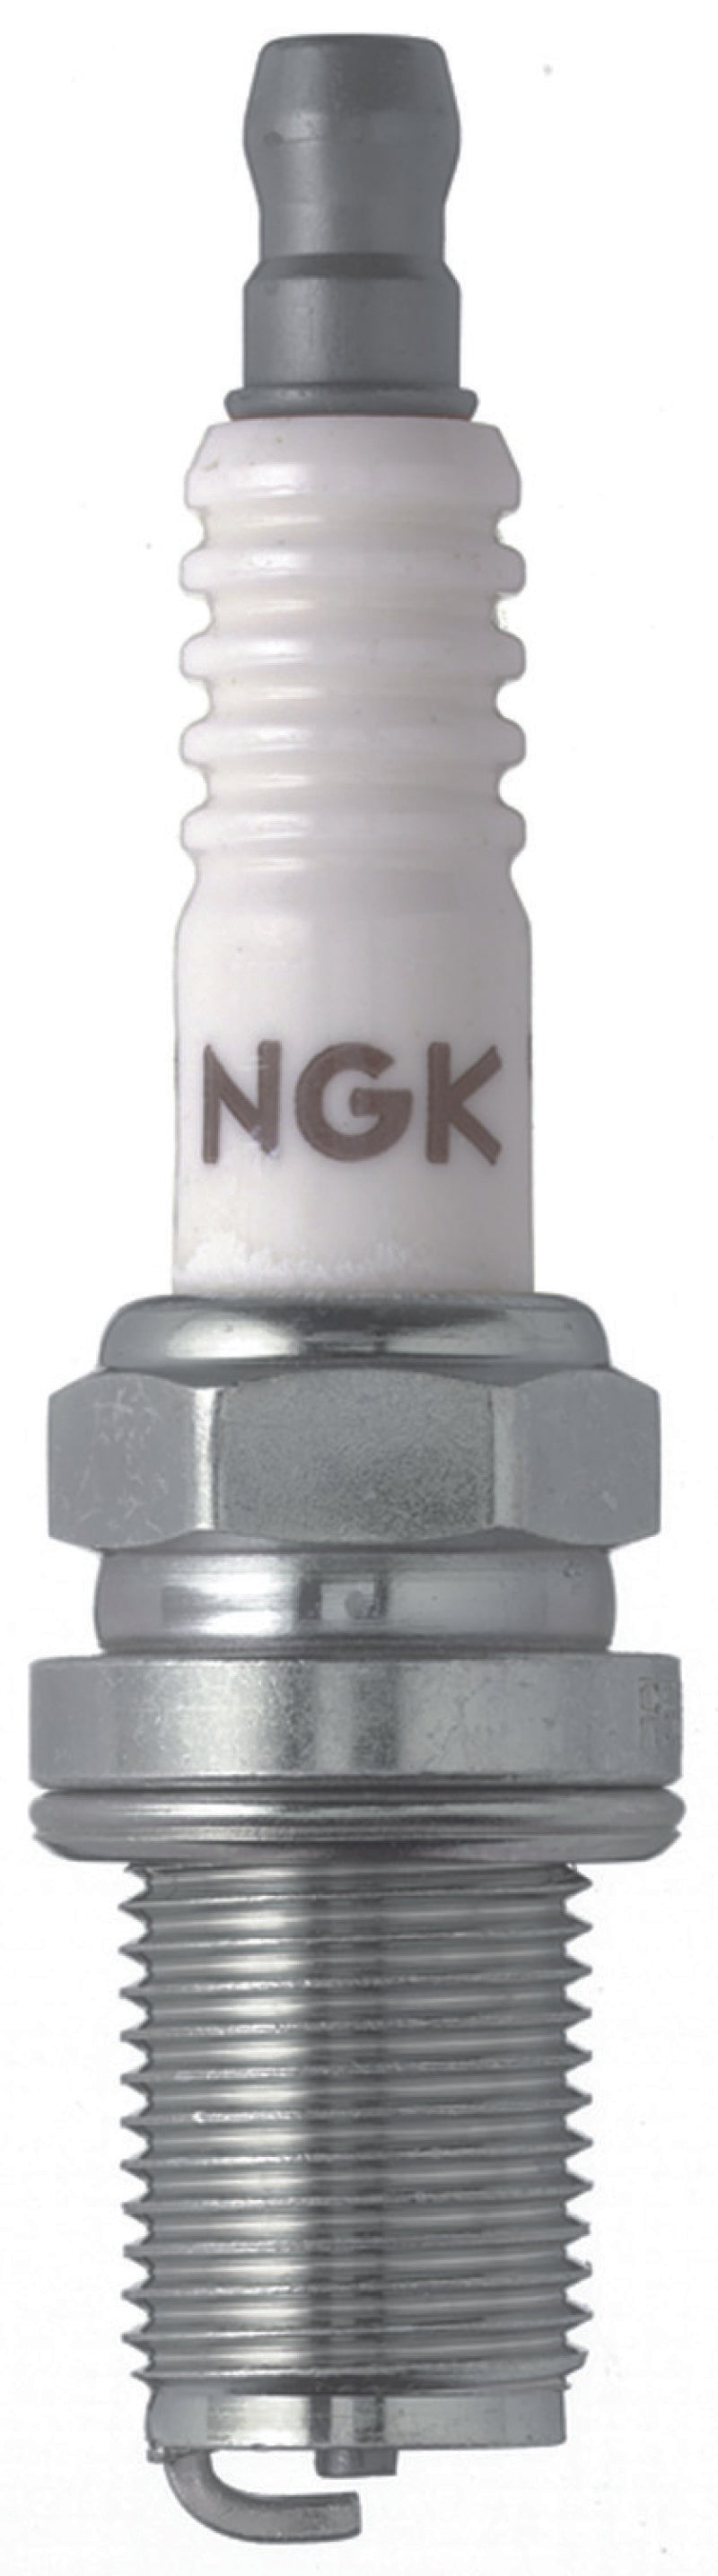 NGK Racing Spark Plug Box of 4 (R5671A-8).